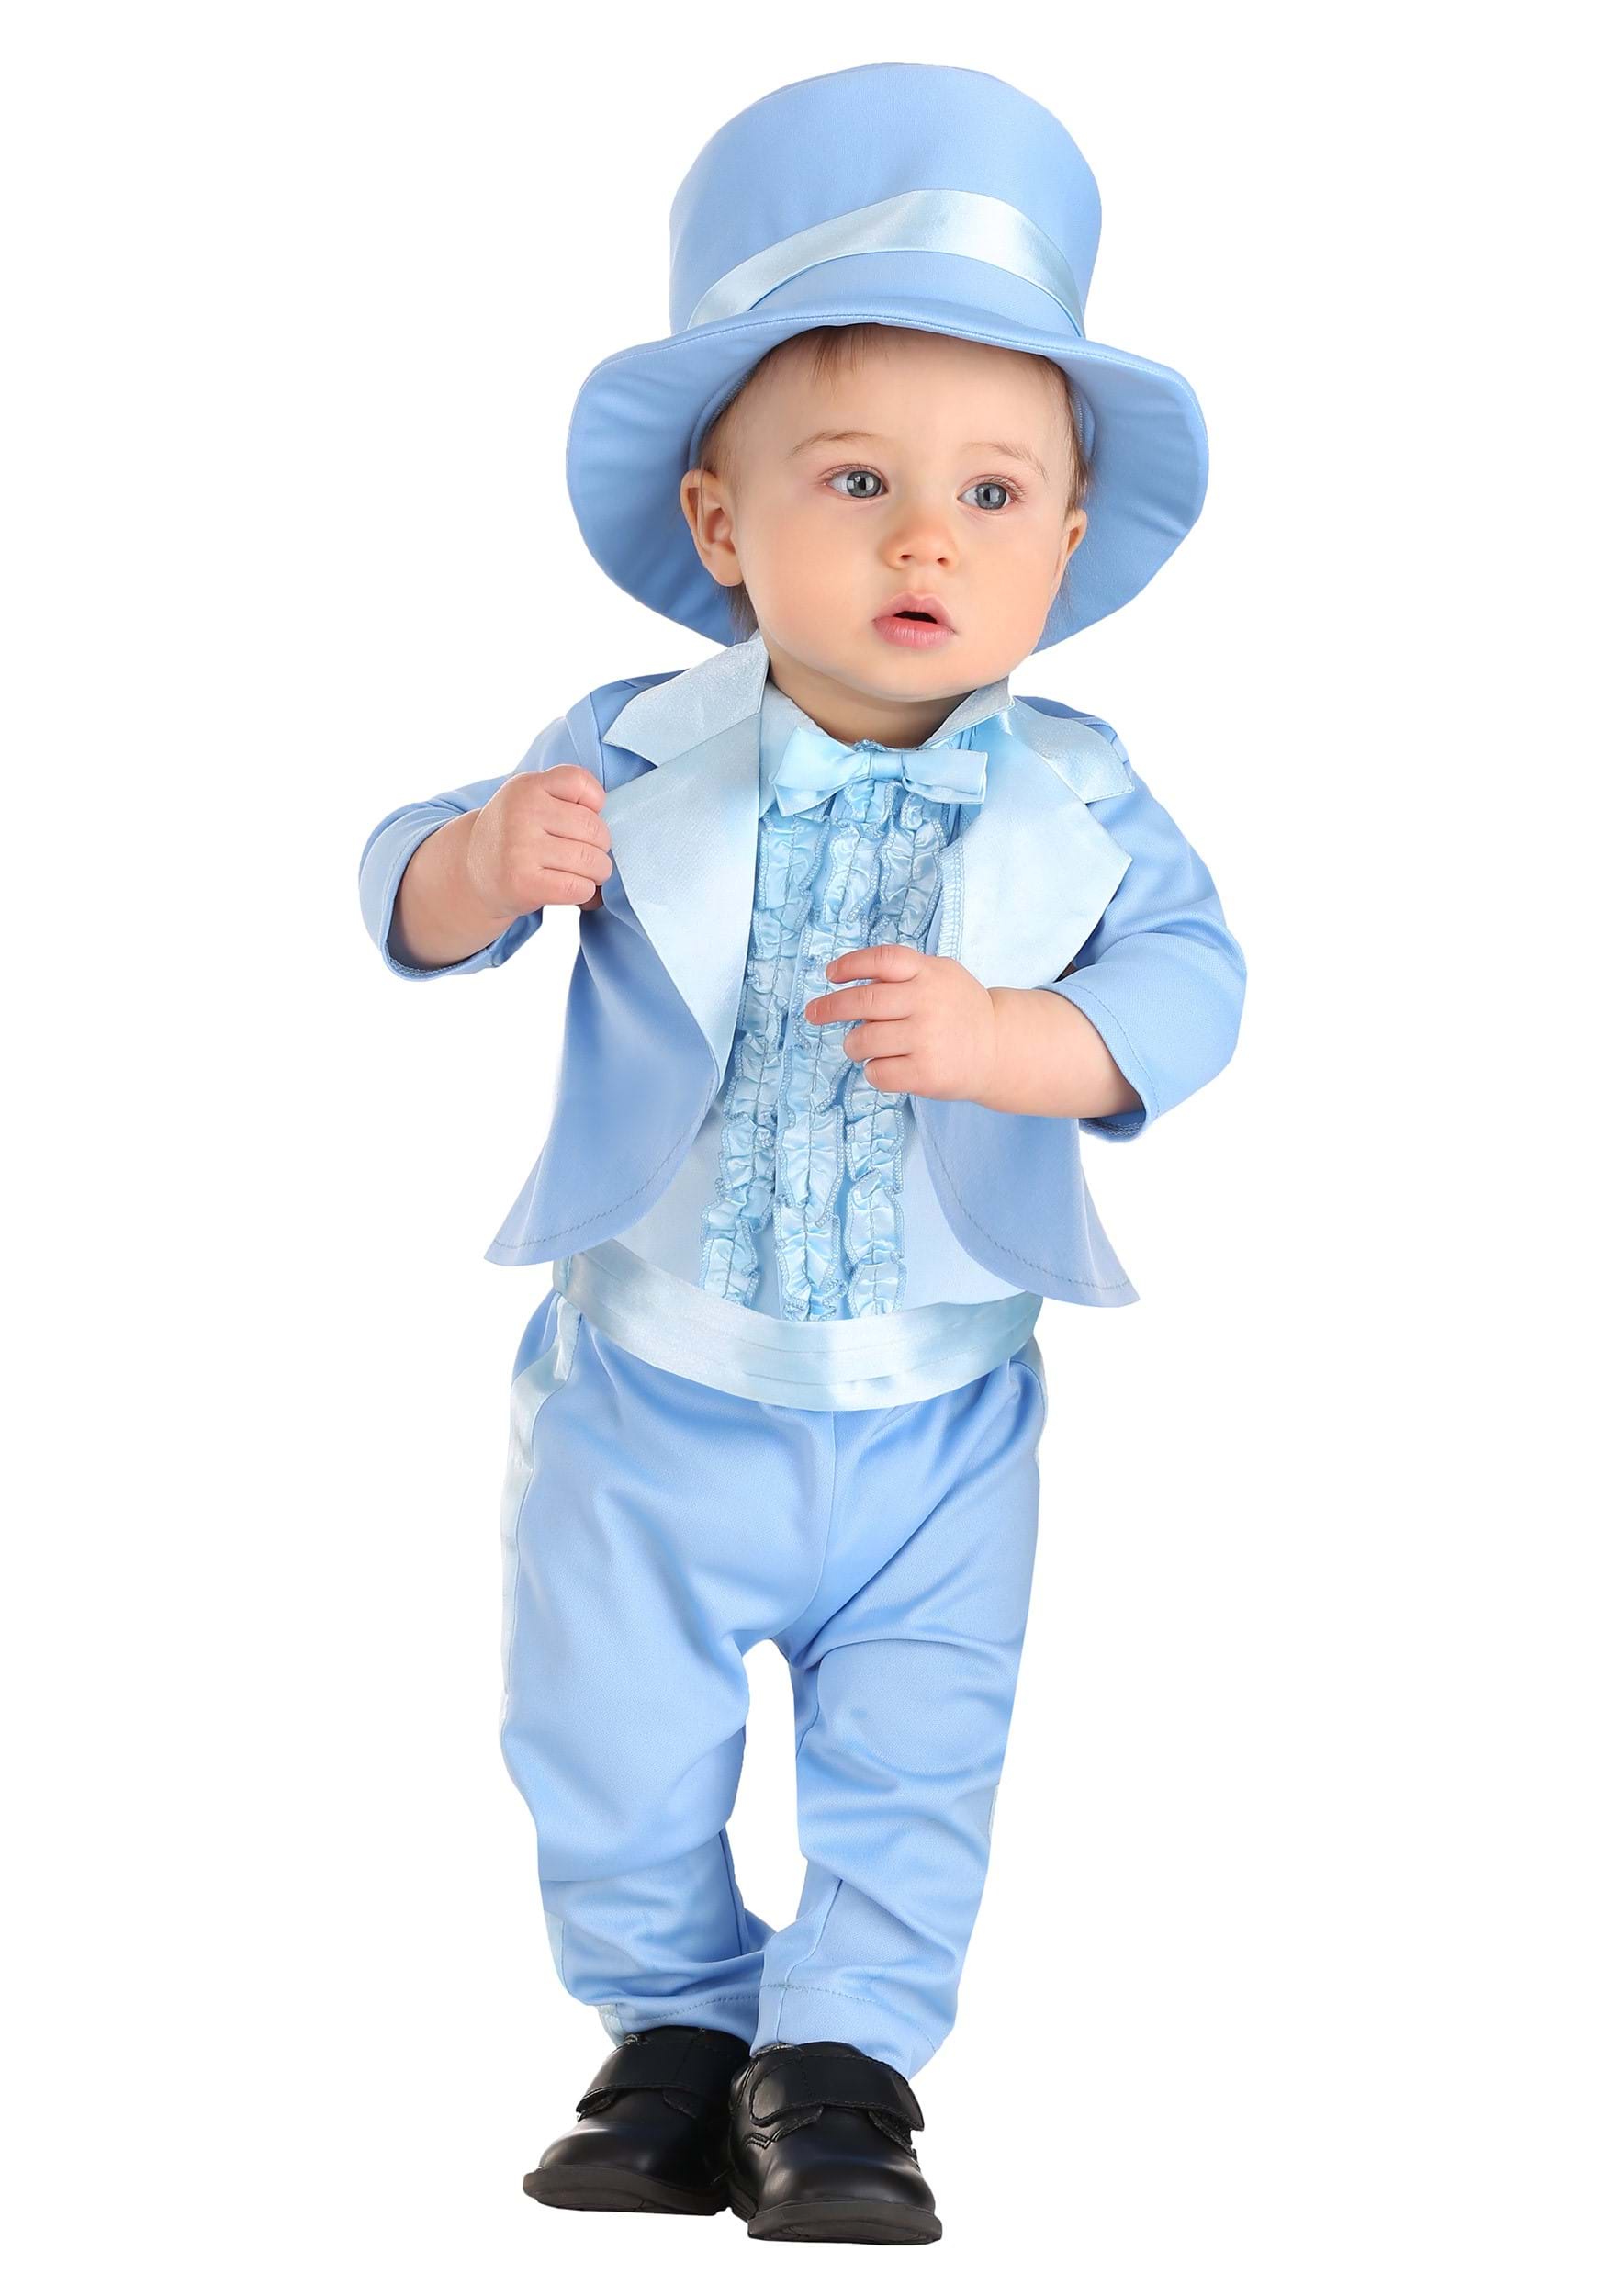 Powder Blue Infant Suit Costume